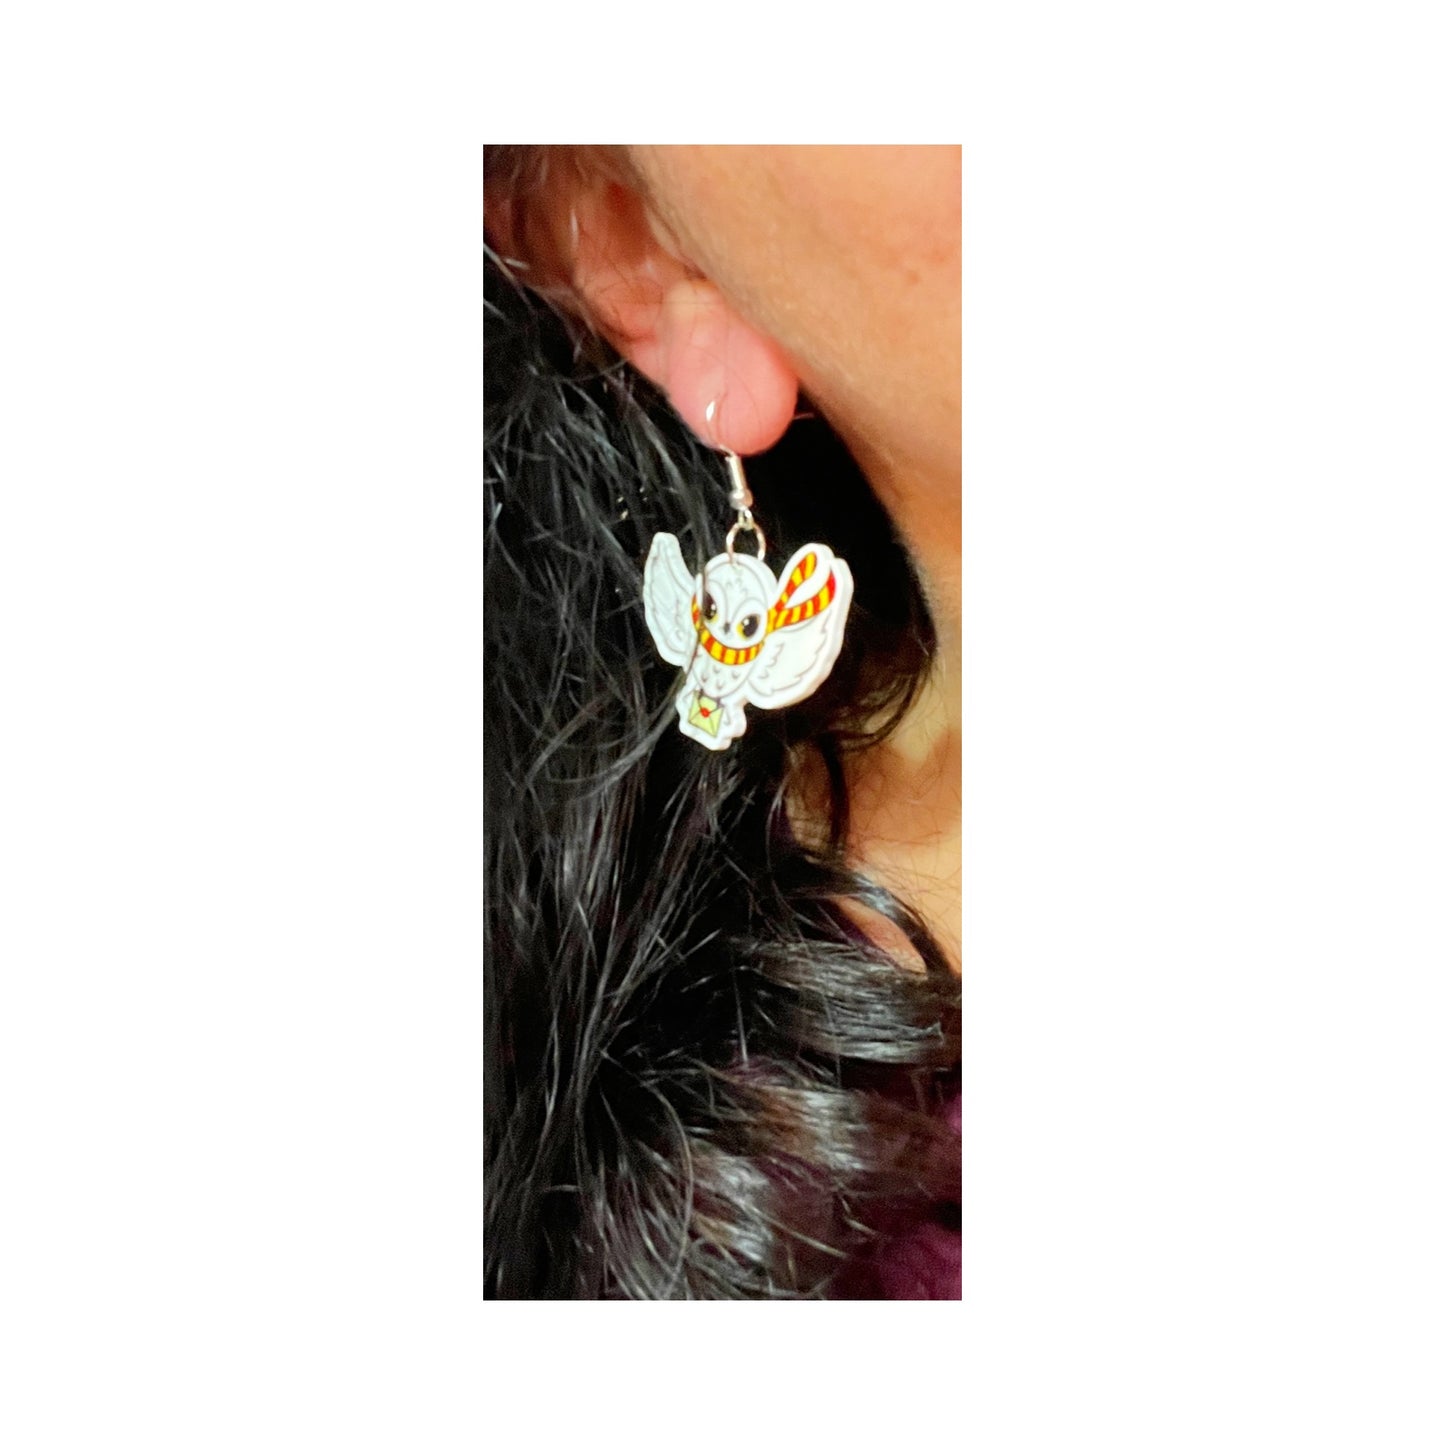 Magic Owl Drop Earrings